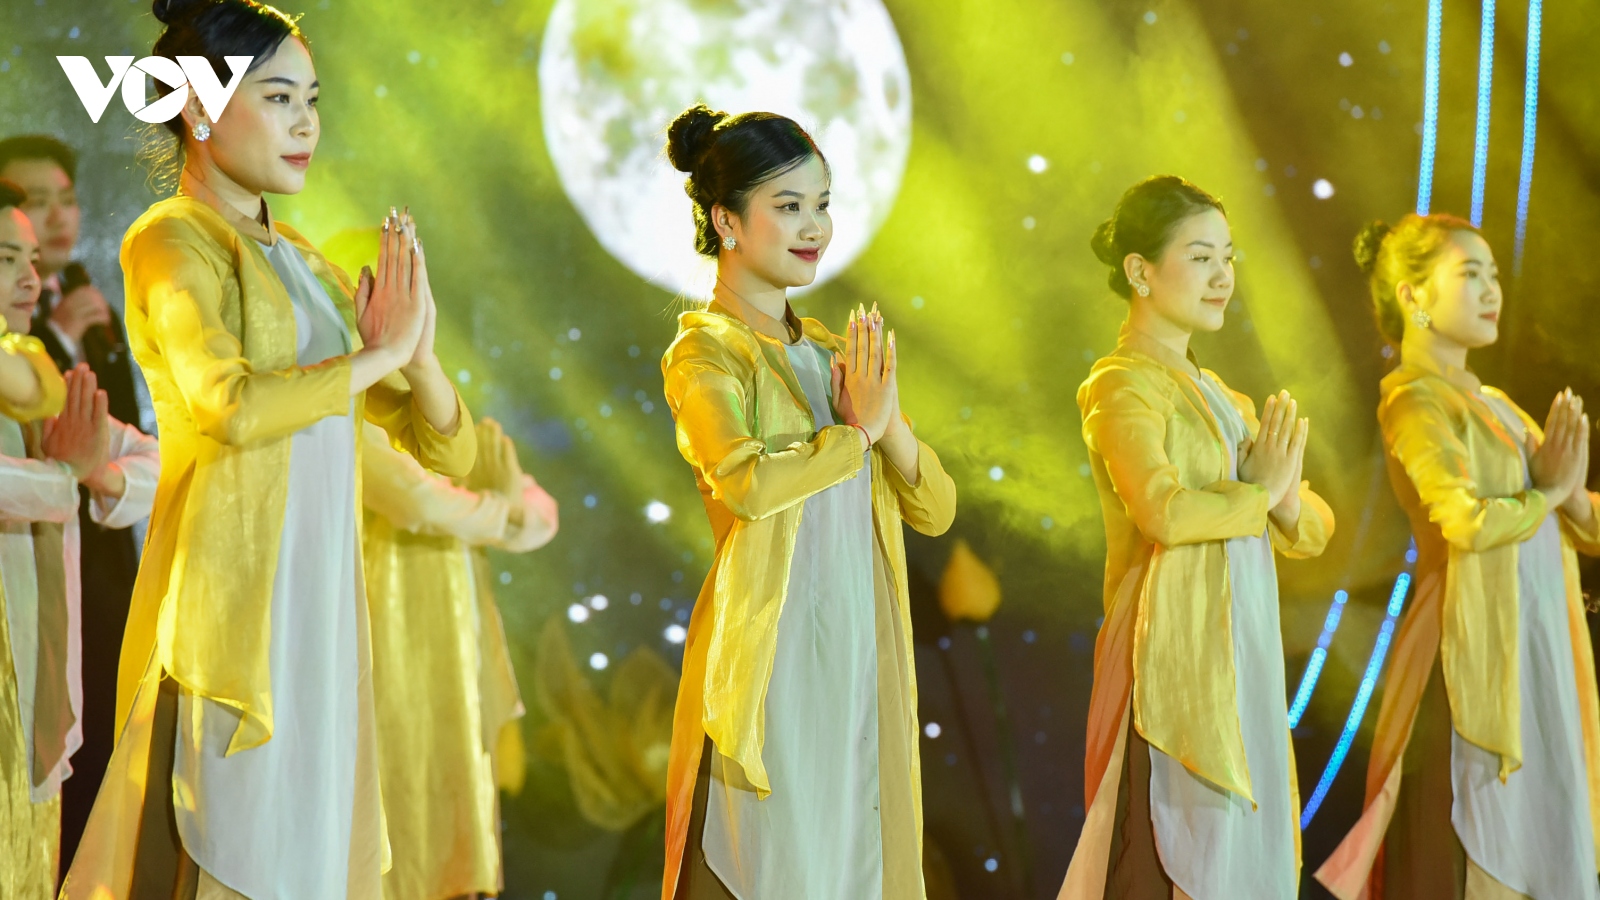 Đặc sắc Đêm nhạc Phật "Vĩnh Nghiêm - Hào quang trí huệ" ở Bắc Giang